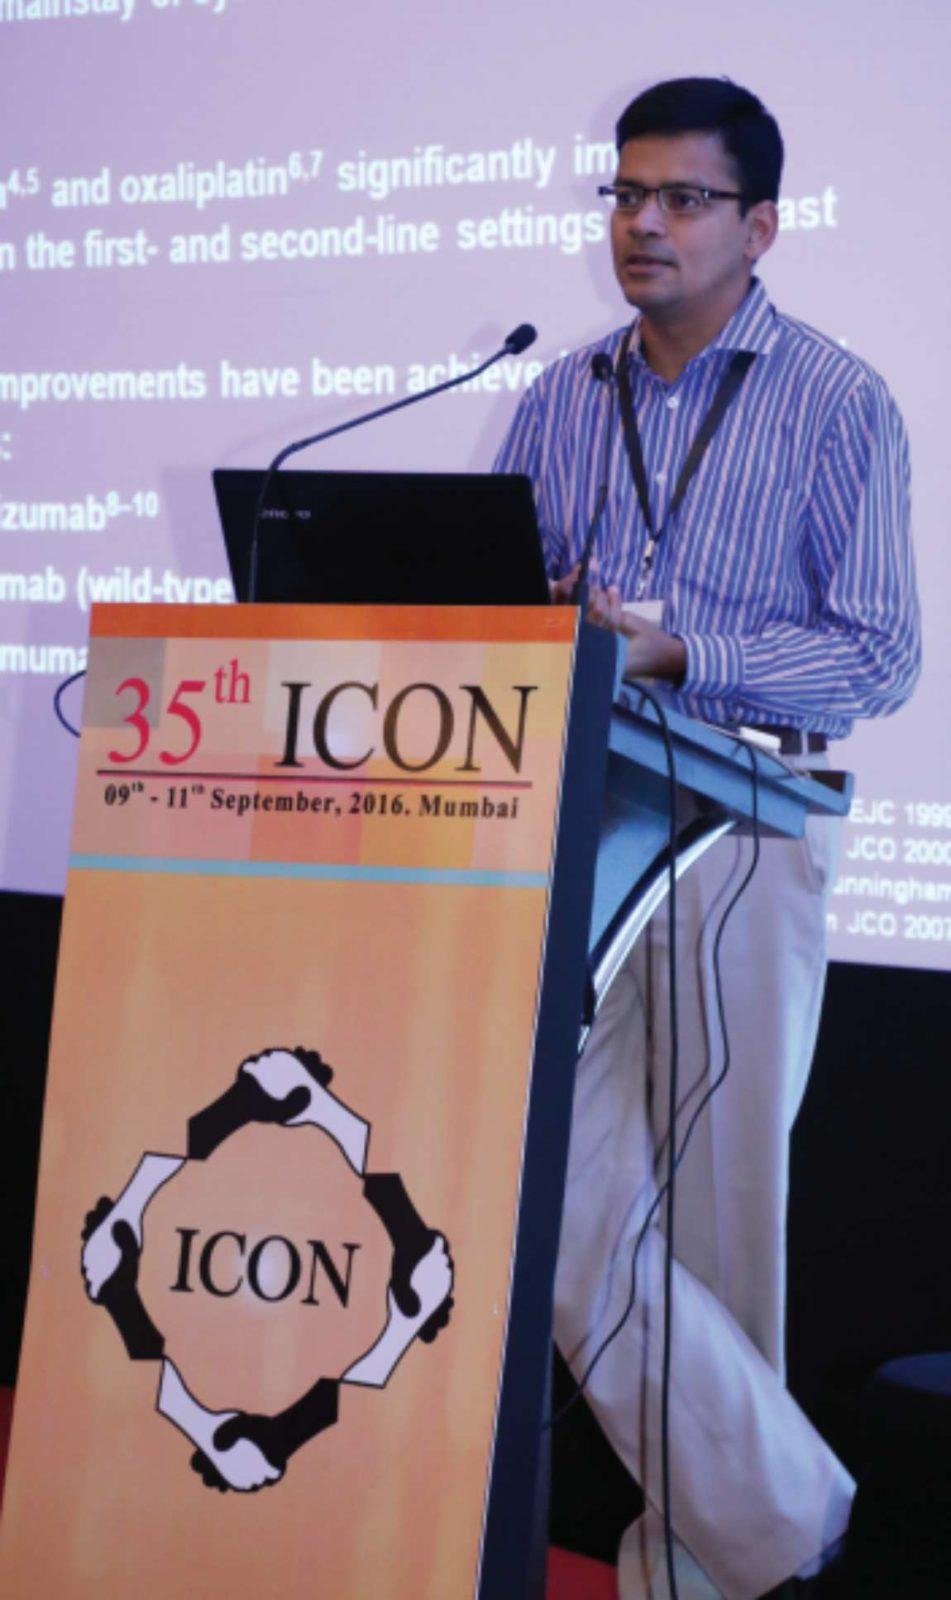 Dr Prasad Narayanan,
Bengaluru